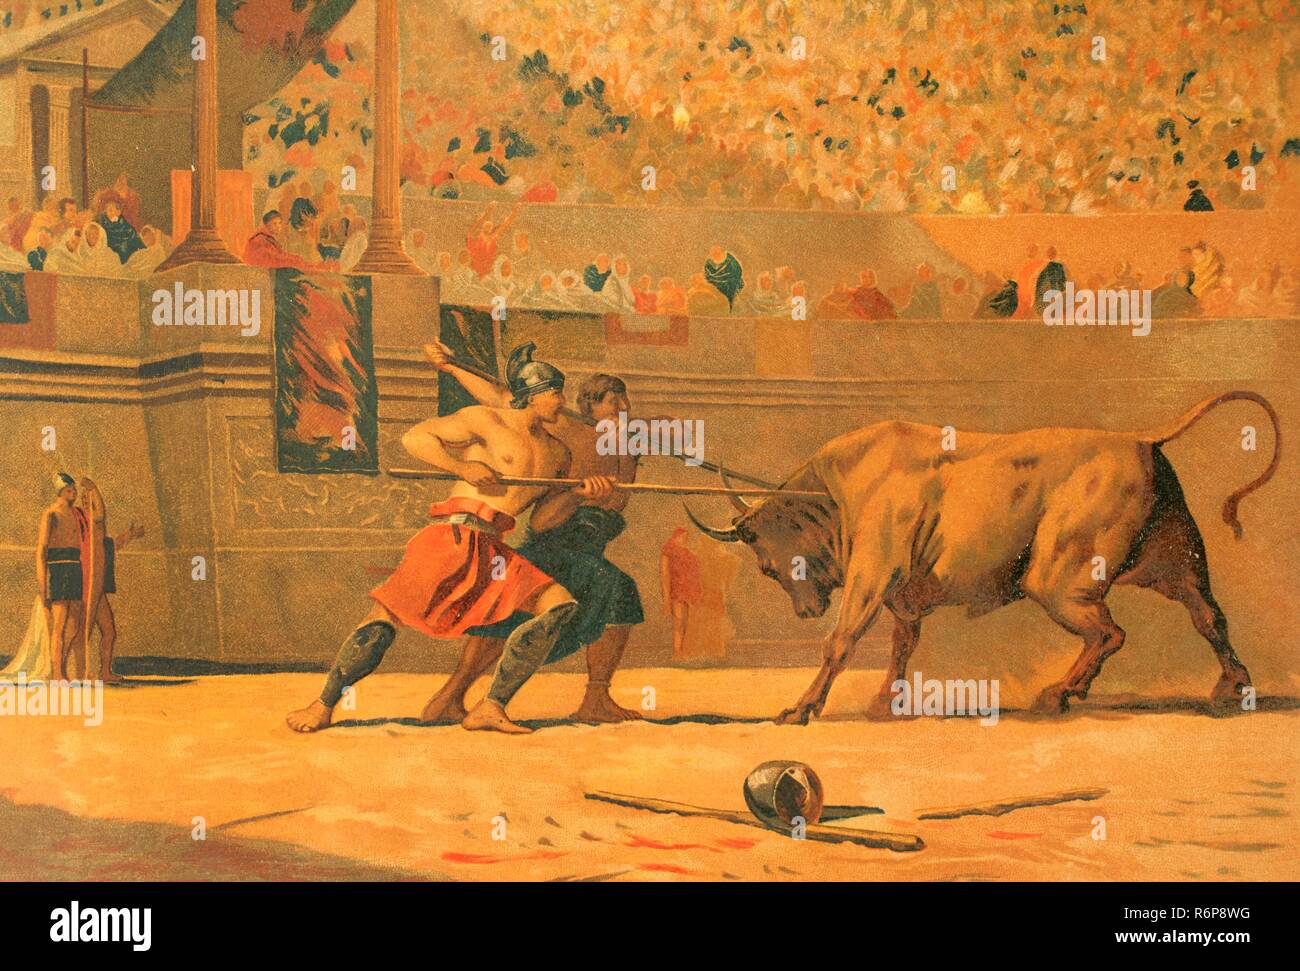 Late Roman Republic. 1st century BC. Feast in honor of Julius Caesar in the Roman circus. Gladiators fighting a bull. Chromolithography. La Civilizacion (The Civilization), 1881. Stock Photo